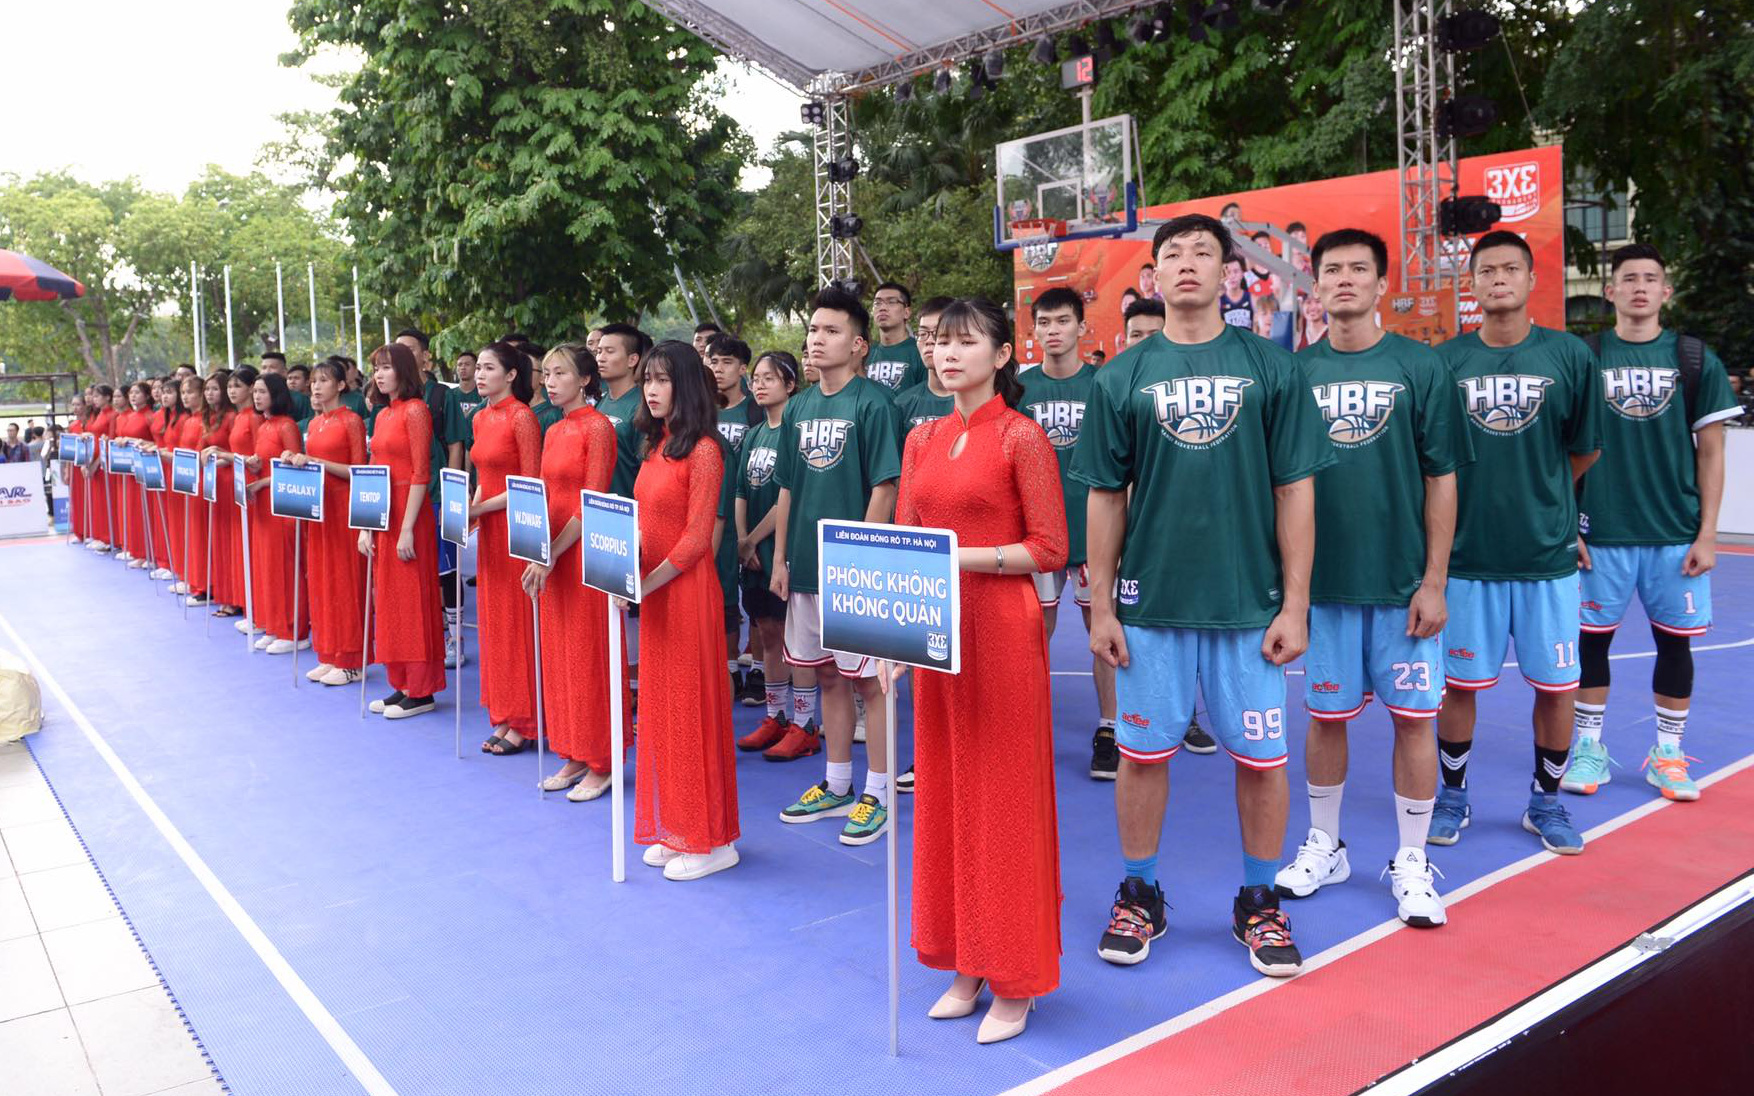 Khai mạc giải bóng rổ HBF 3x3 2020, sân chơi phong trào với quy mô lớn đầu tiên chính thức đến với NHM Hà Nội